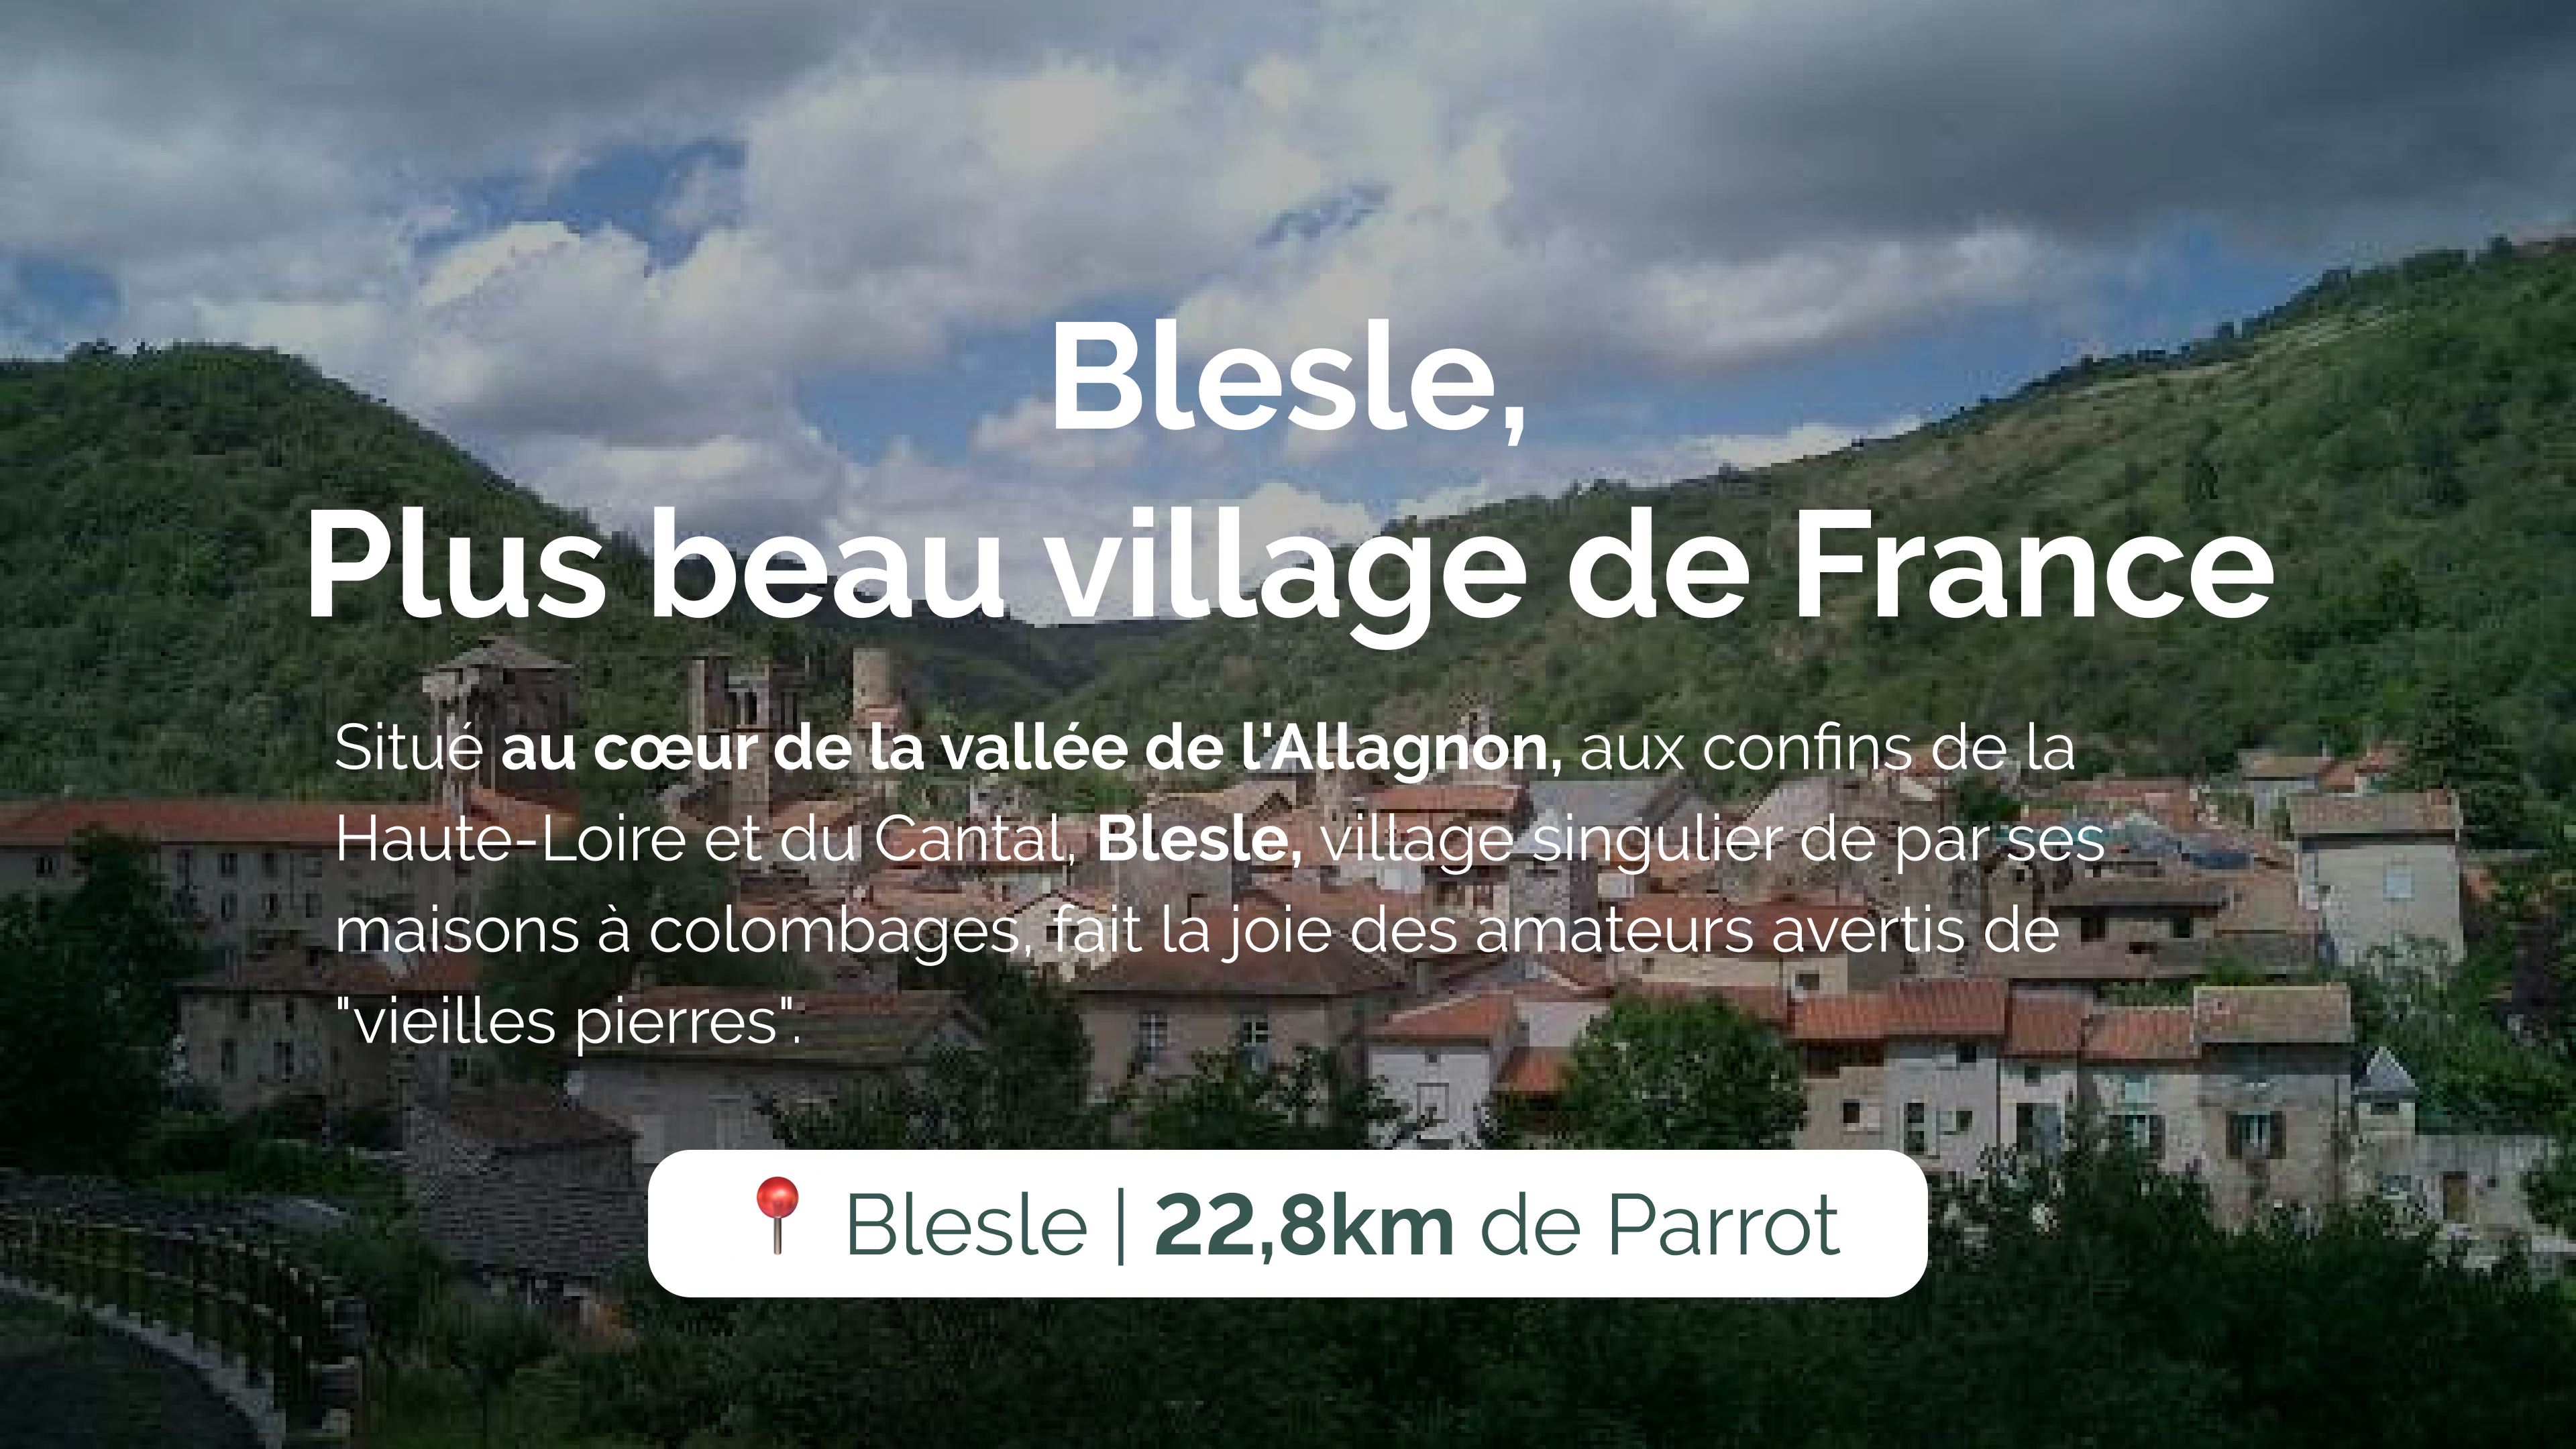 Blesle, Plus beau village de France